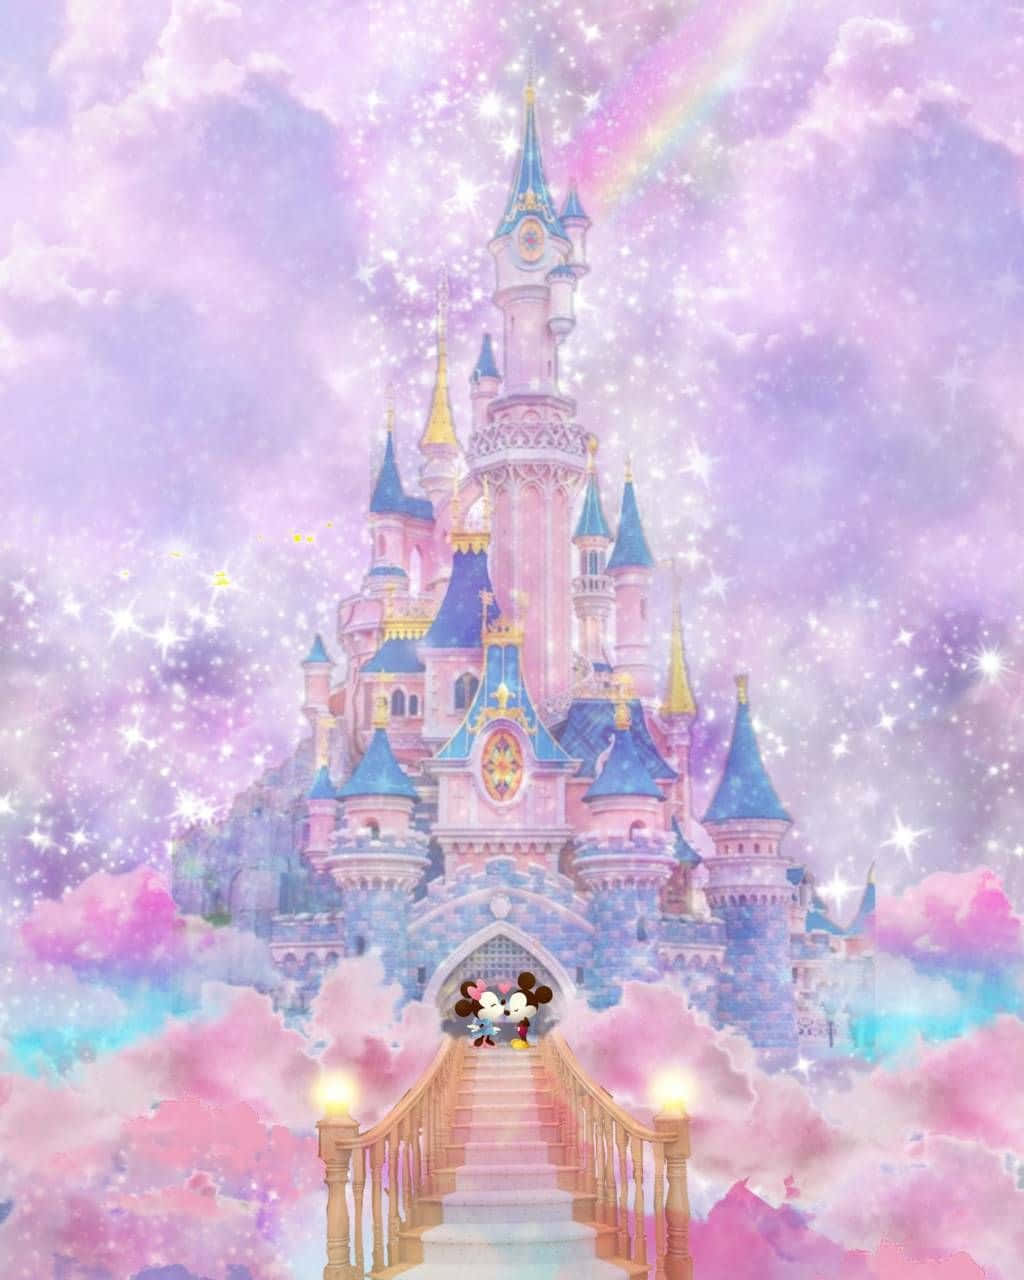 "Dream big at Walt Disney World in Orlando, Florida"